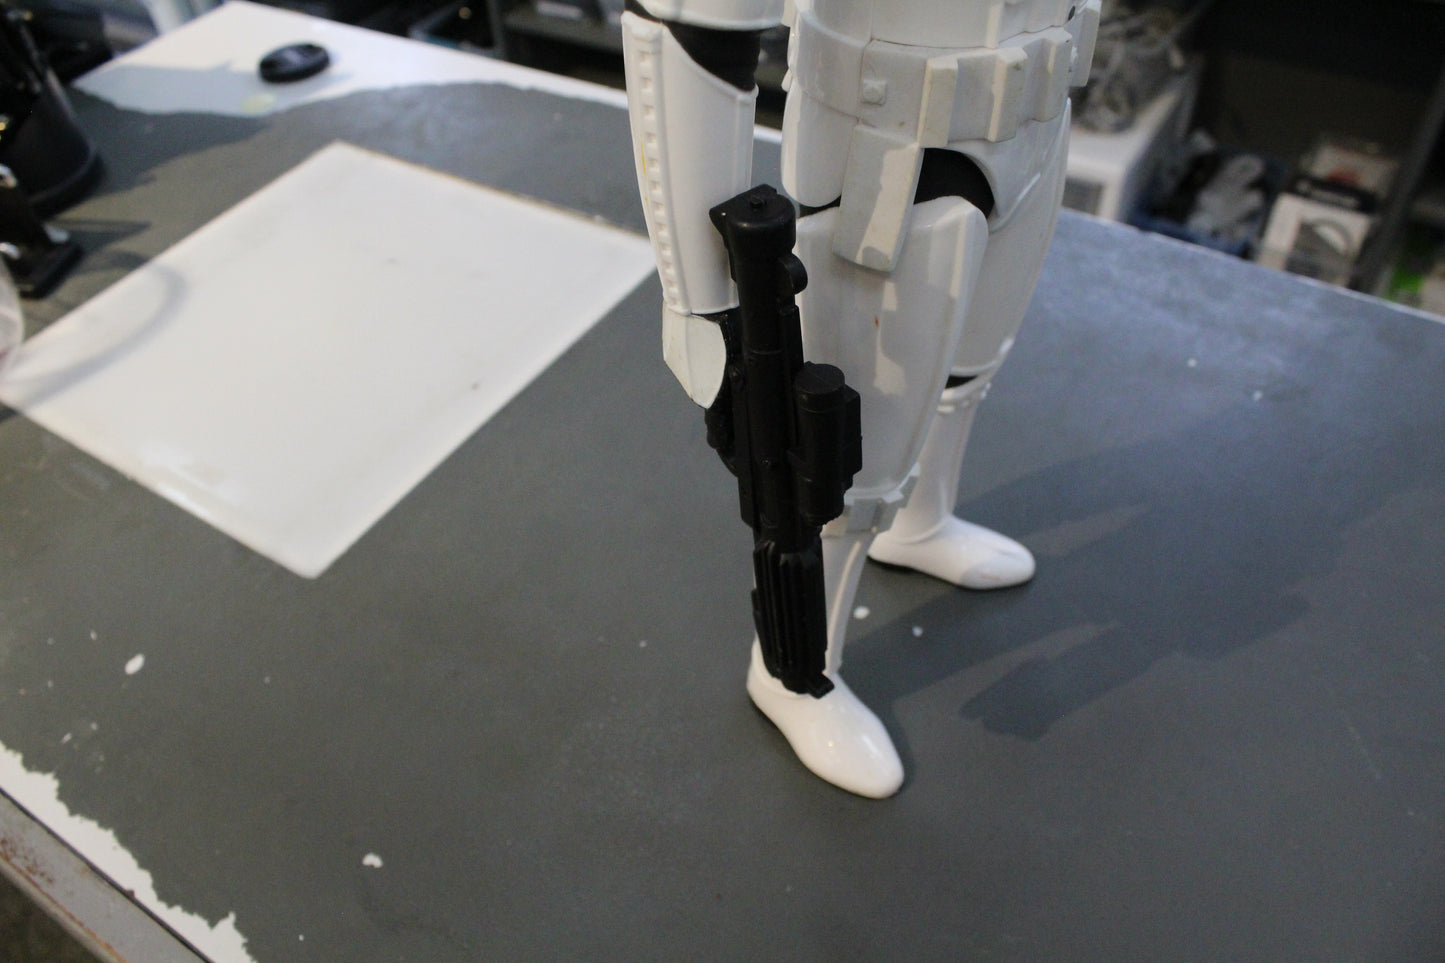 Star Wars Storm trooper 19 inch figure Jakks Pacfic 2014